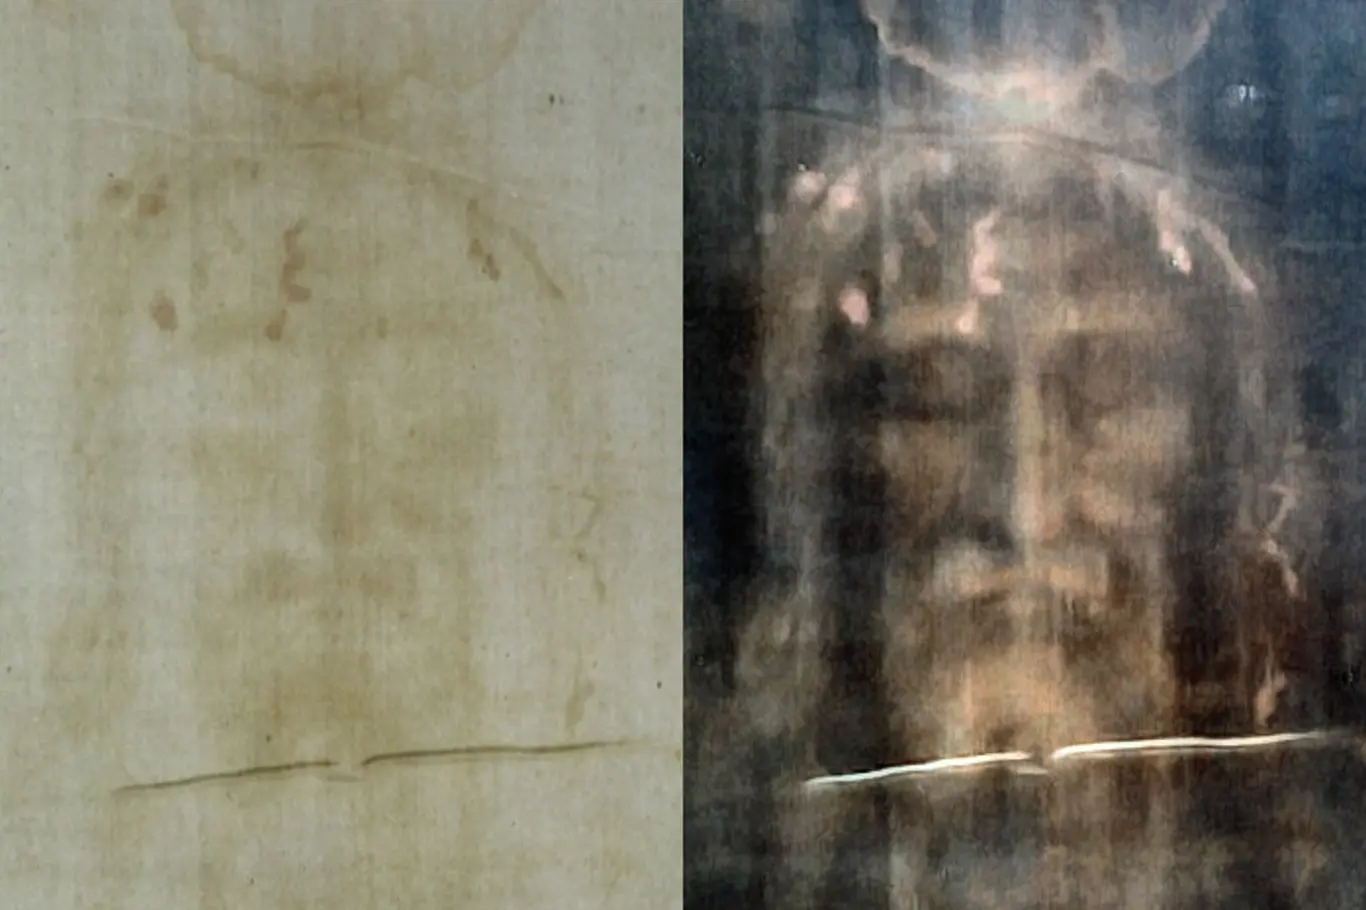 Zpracovaný snímek vpravo je výsledkem použití digitálních filtrů.